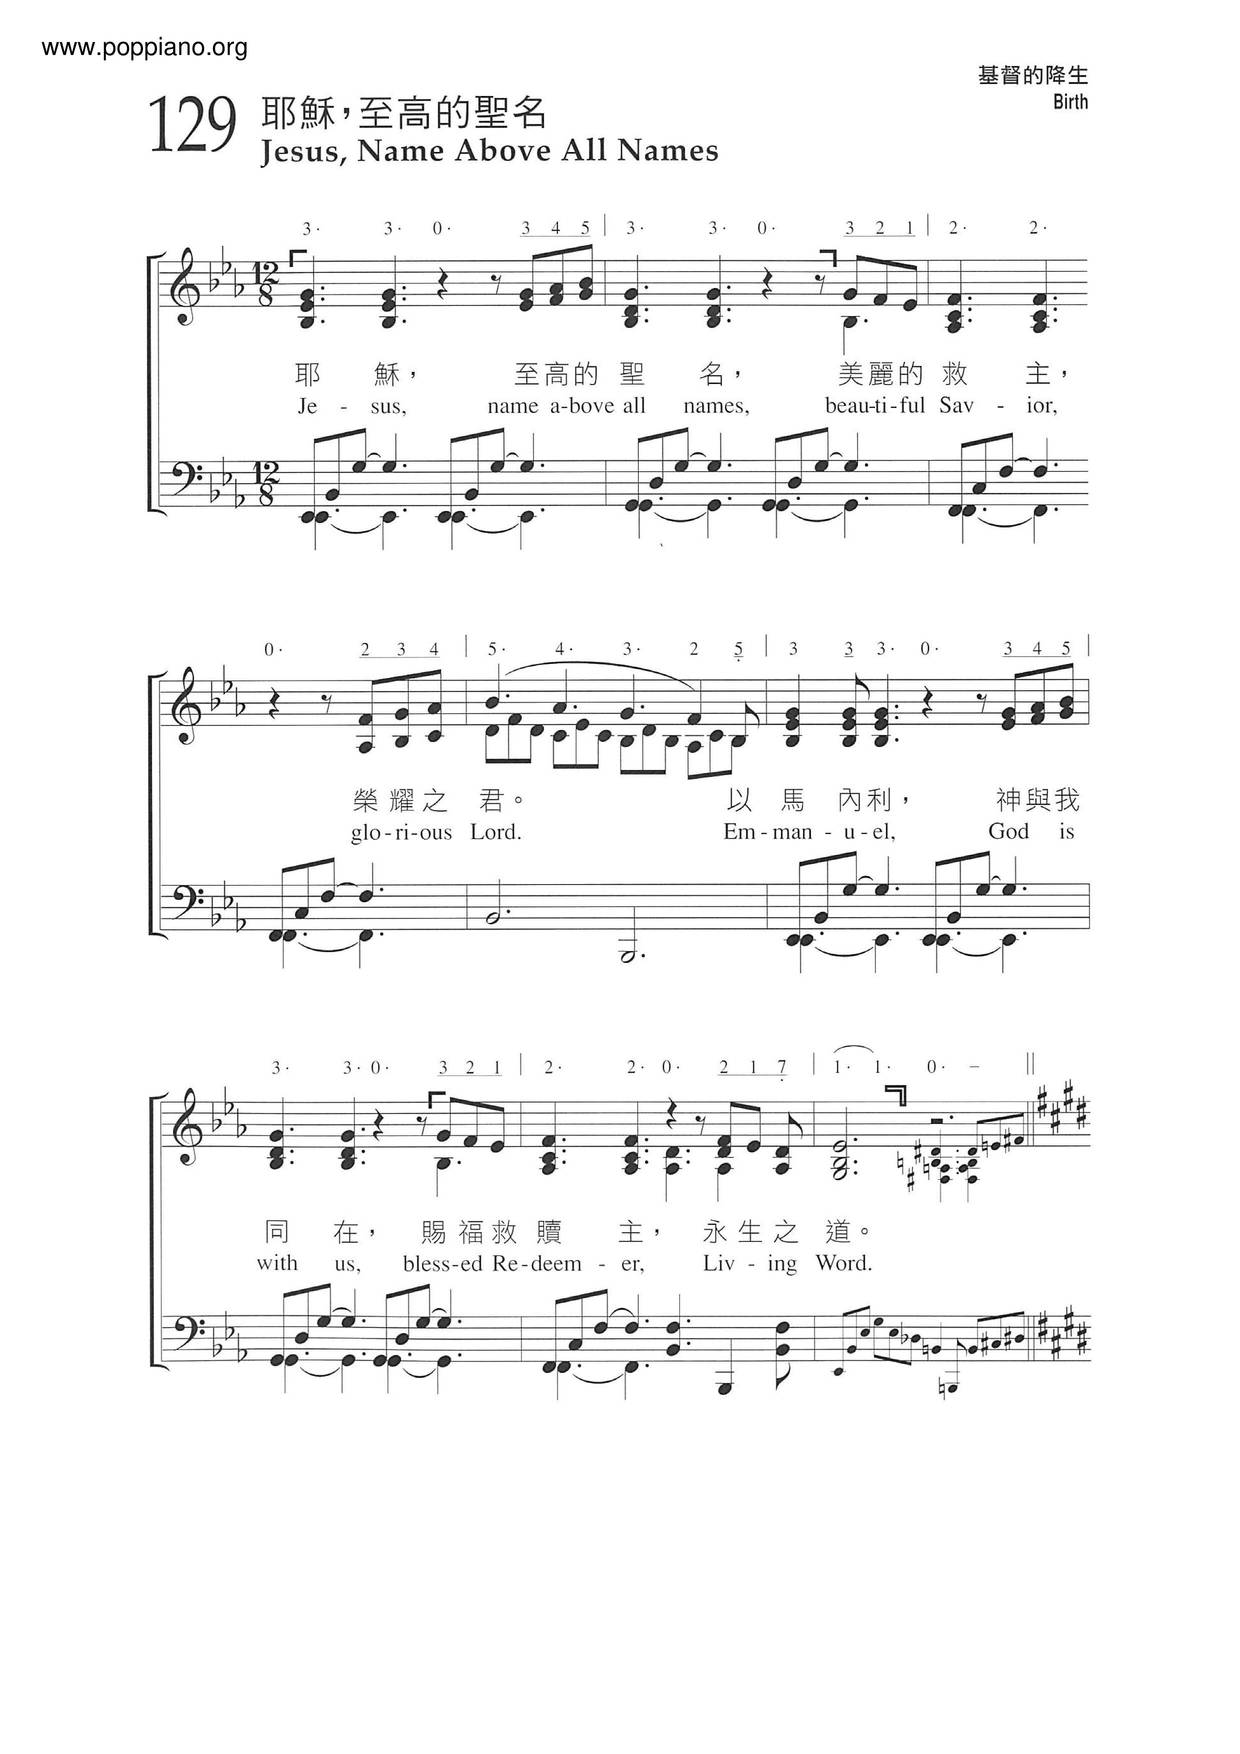 ★ 詩歌-耶穌，至高的聖名 琴譜pdf-香港流行鋼琴協會琴譜下載 ★